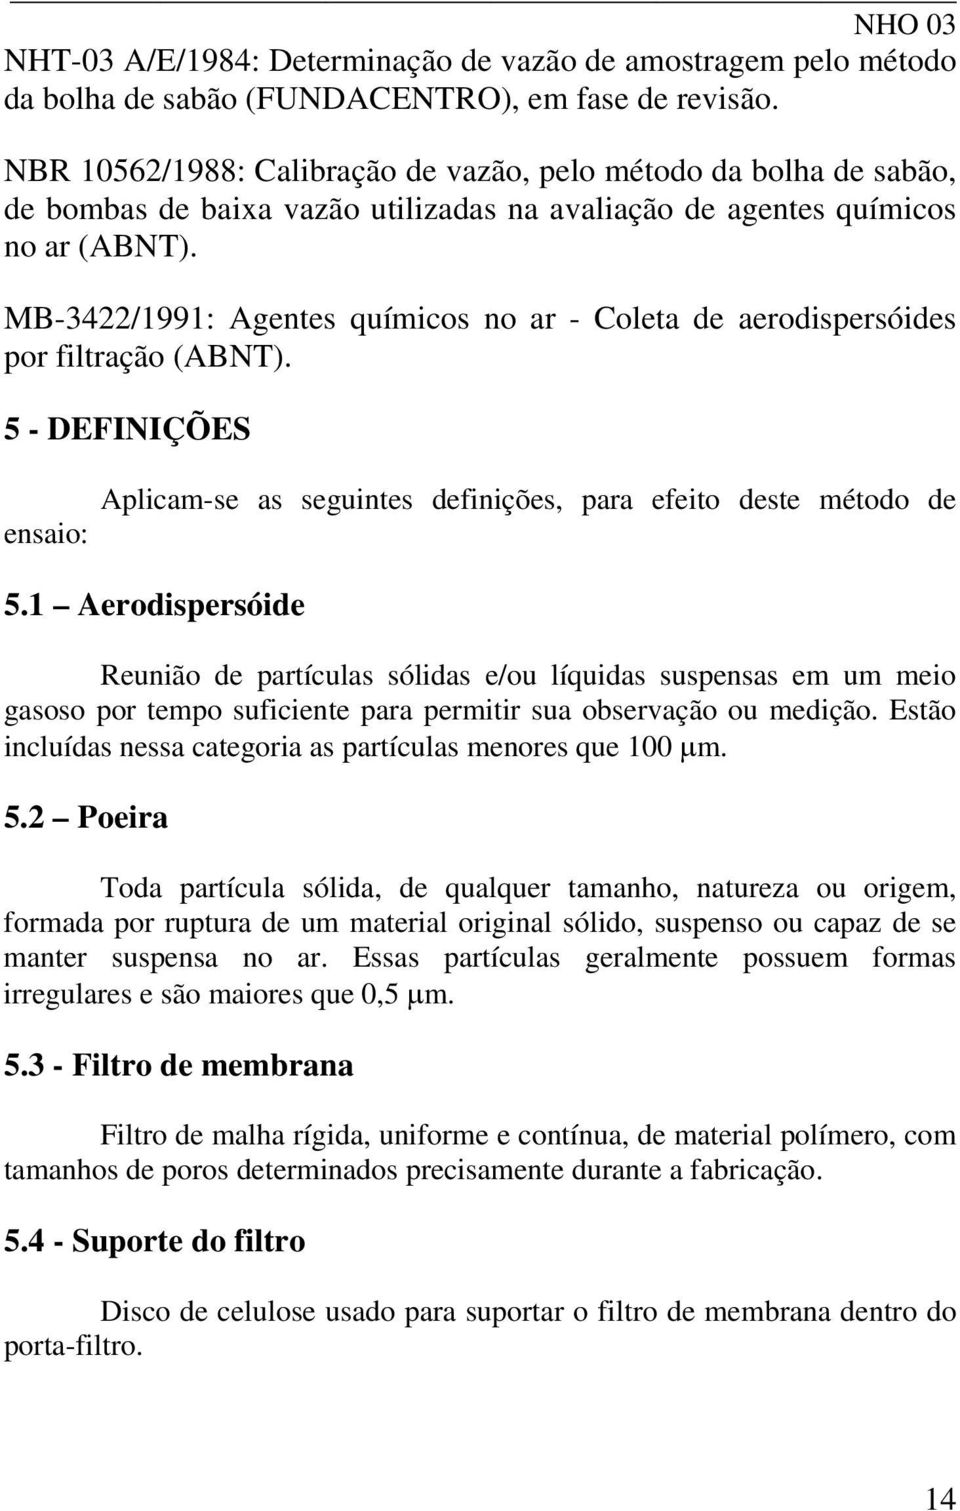 MB-3422/1991: Agentes químicos no ar - Coleta de aerodispersóides por filtração (ABNT). 5 - DEFINIÇÕES ensaio: Aplicam-se as seguintes definições, para efeito deste método de 5.